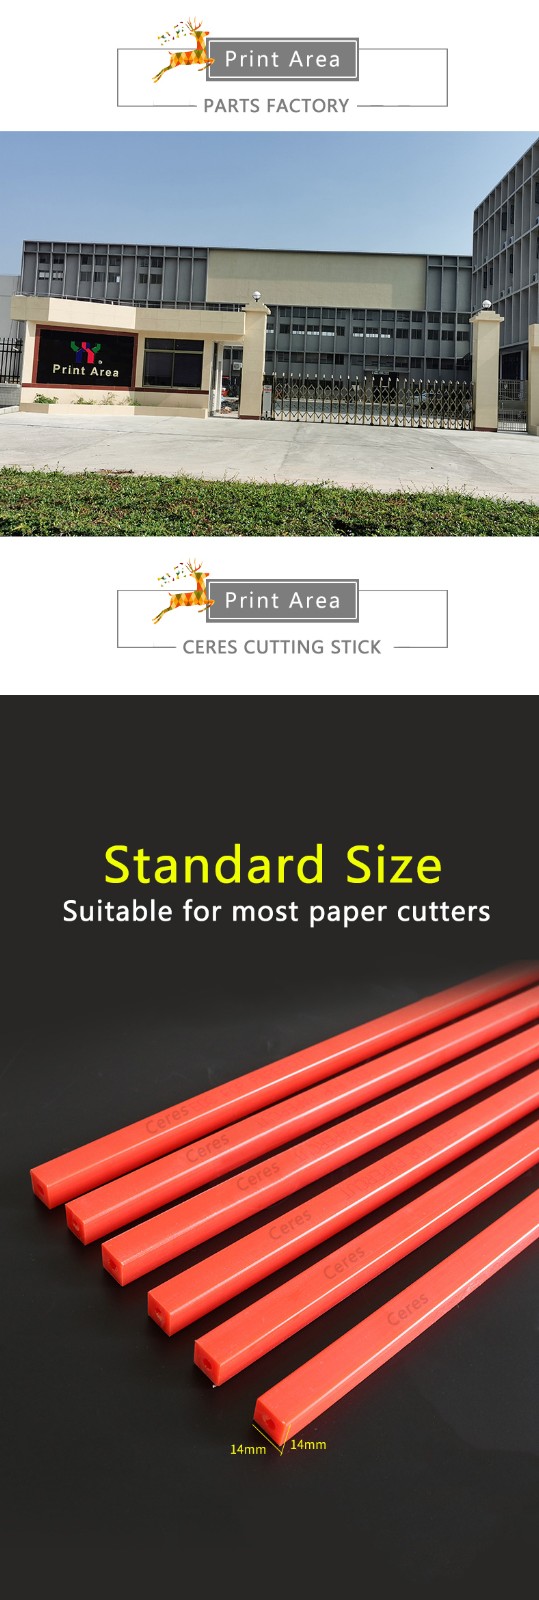 Paper Cutting Stick